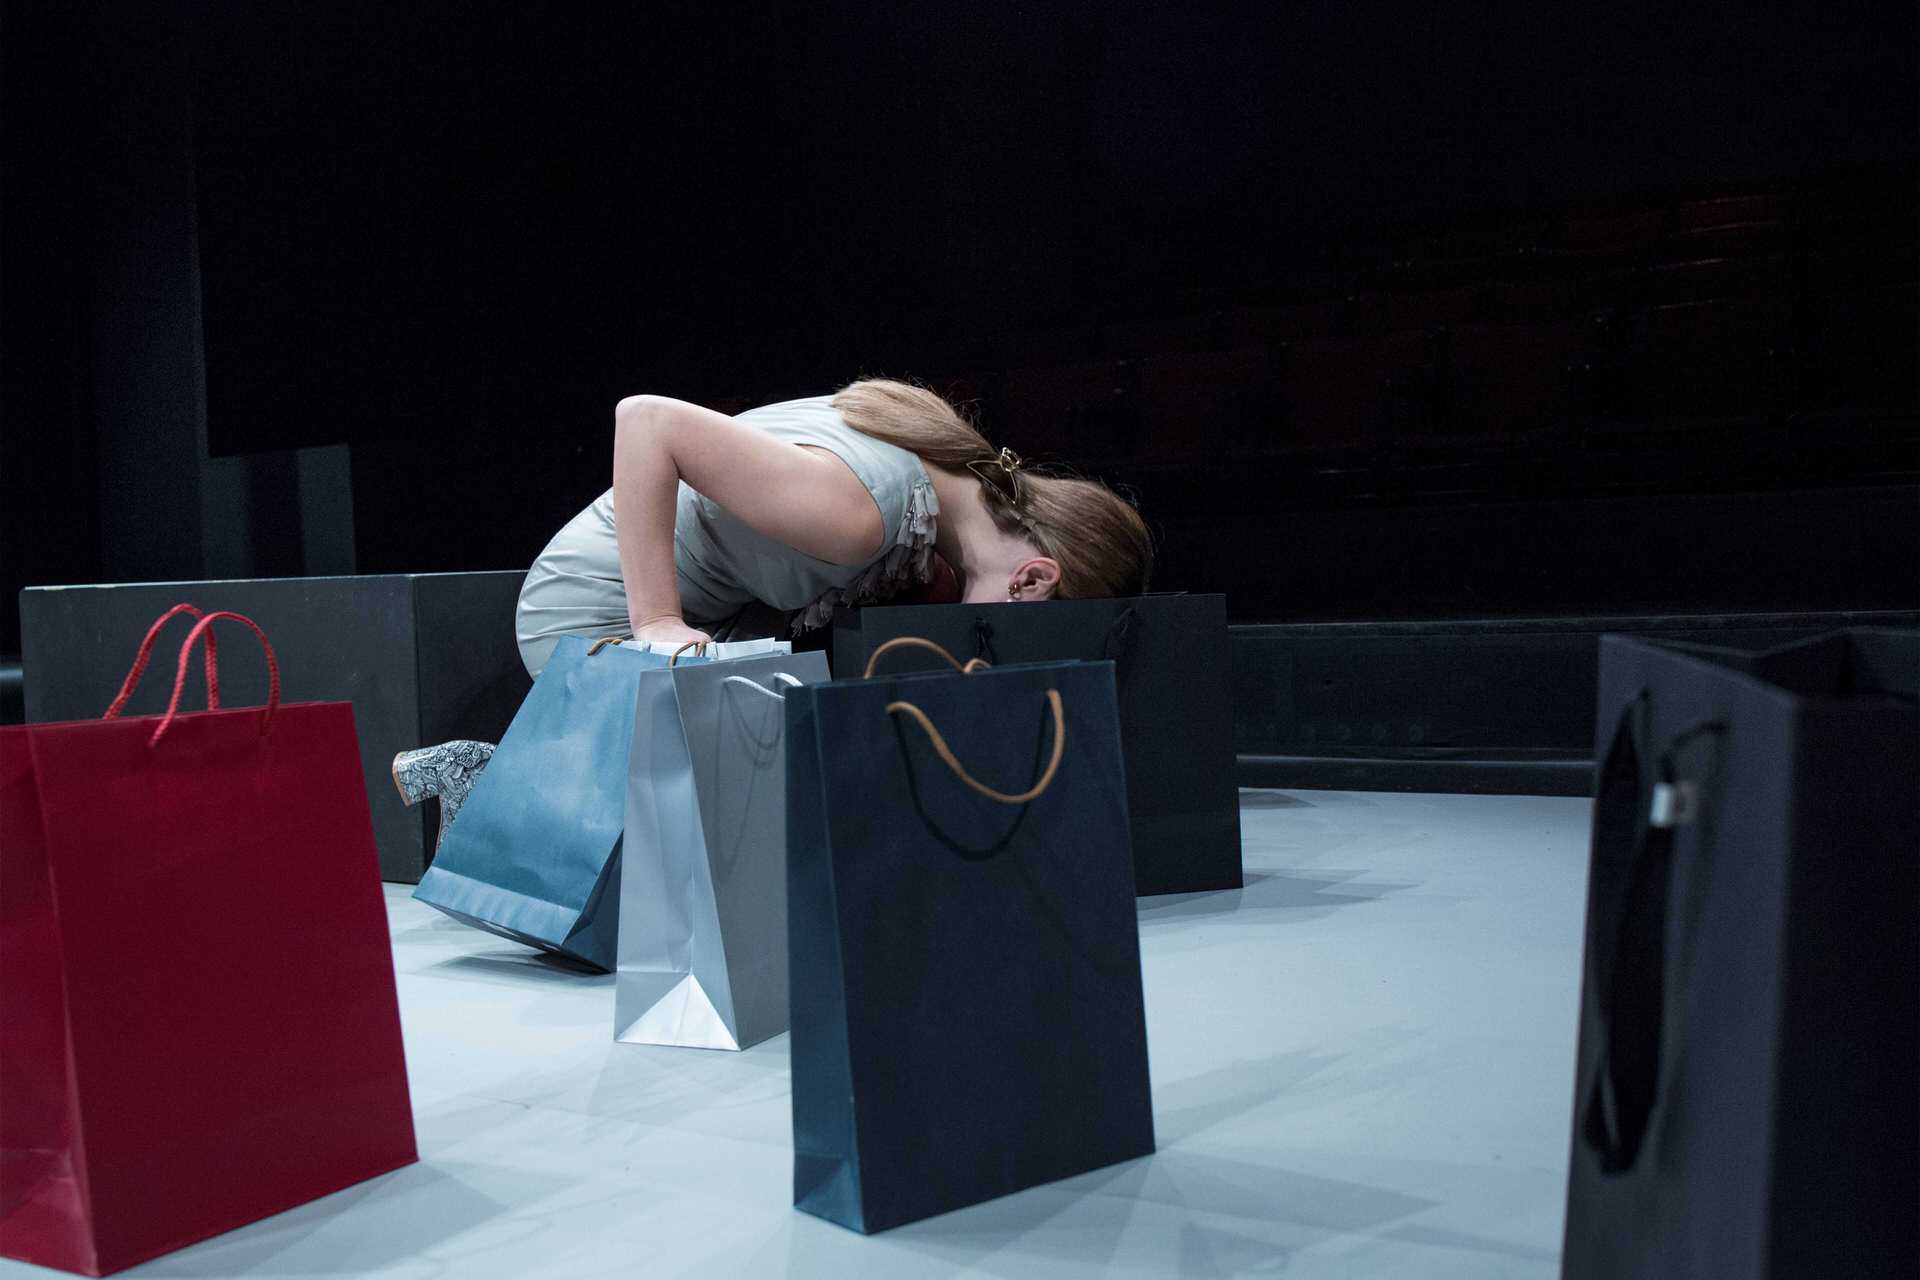 Θέατρο Τέχνης: 4 τελευταίες παραστάσεις για το "Love and Money" σε σκηνοθεσία Σοφίας Μαραθάκη